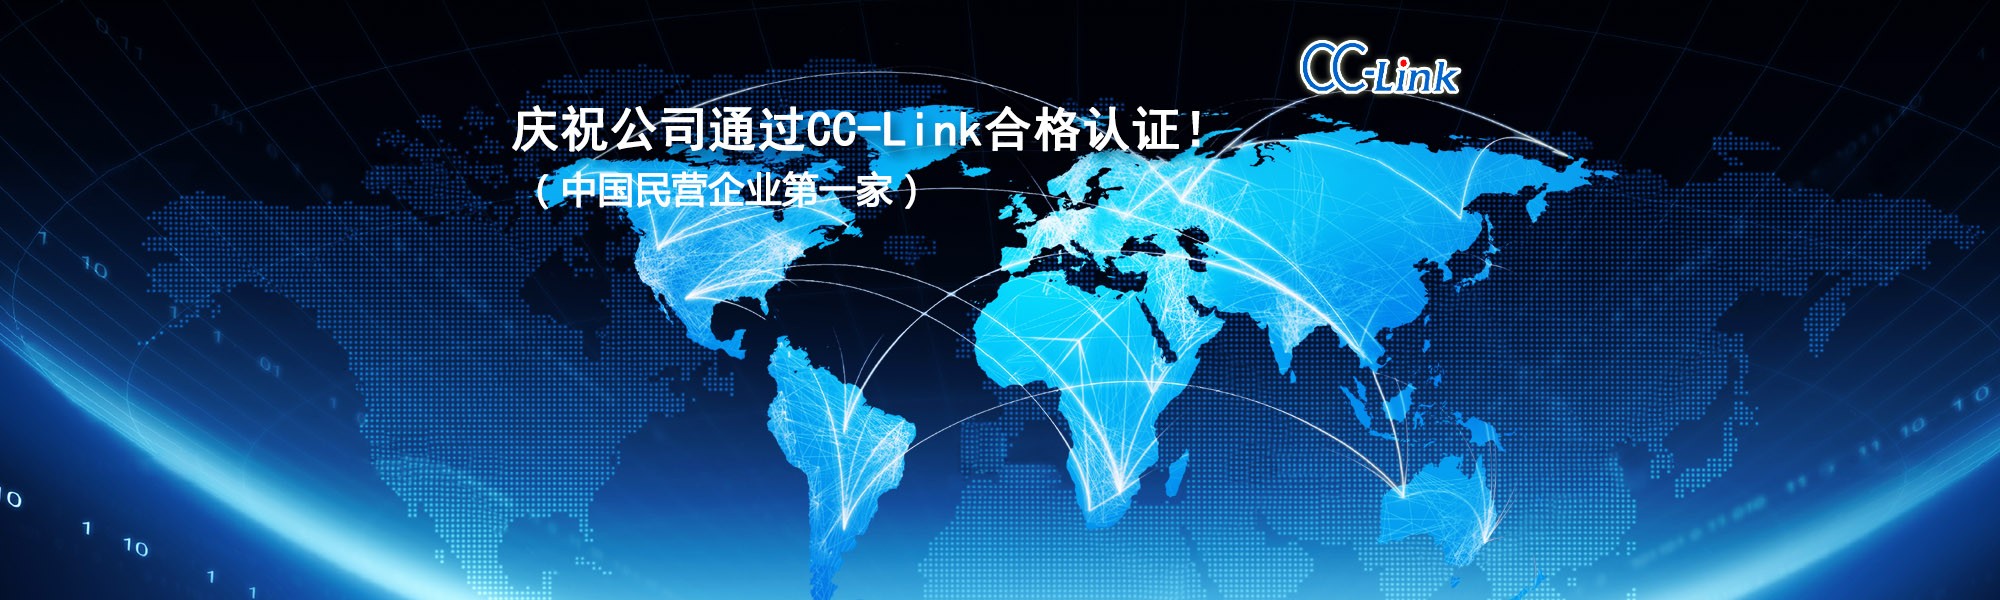 庆祝公司通过CC-Link合格认证！（中国民营企业第一家）